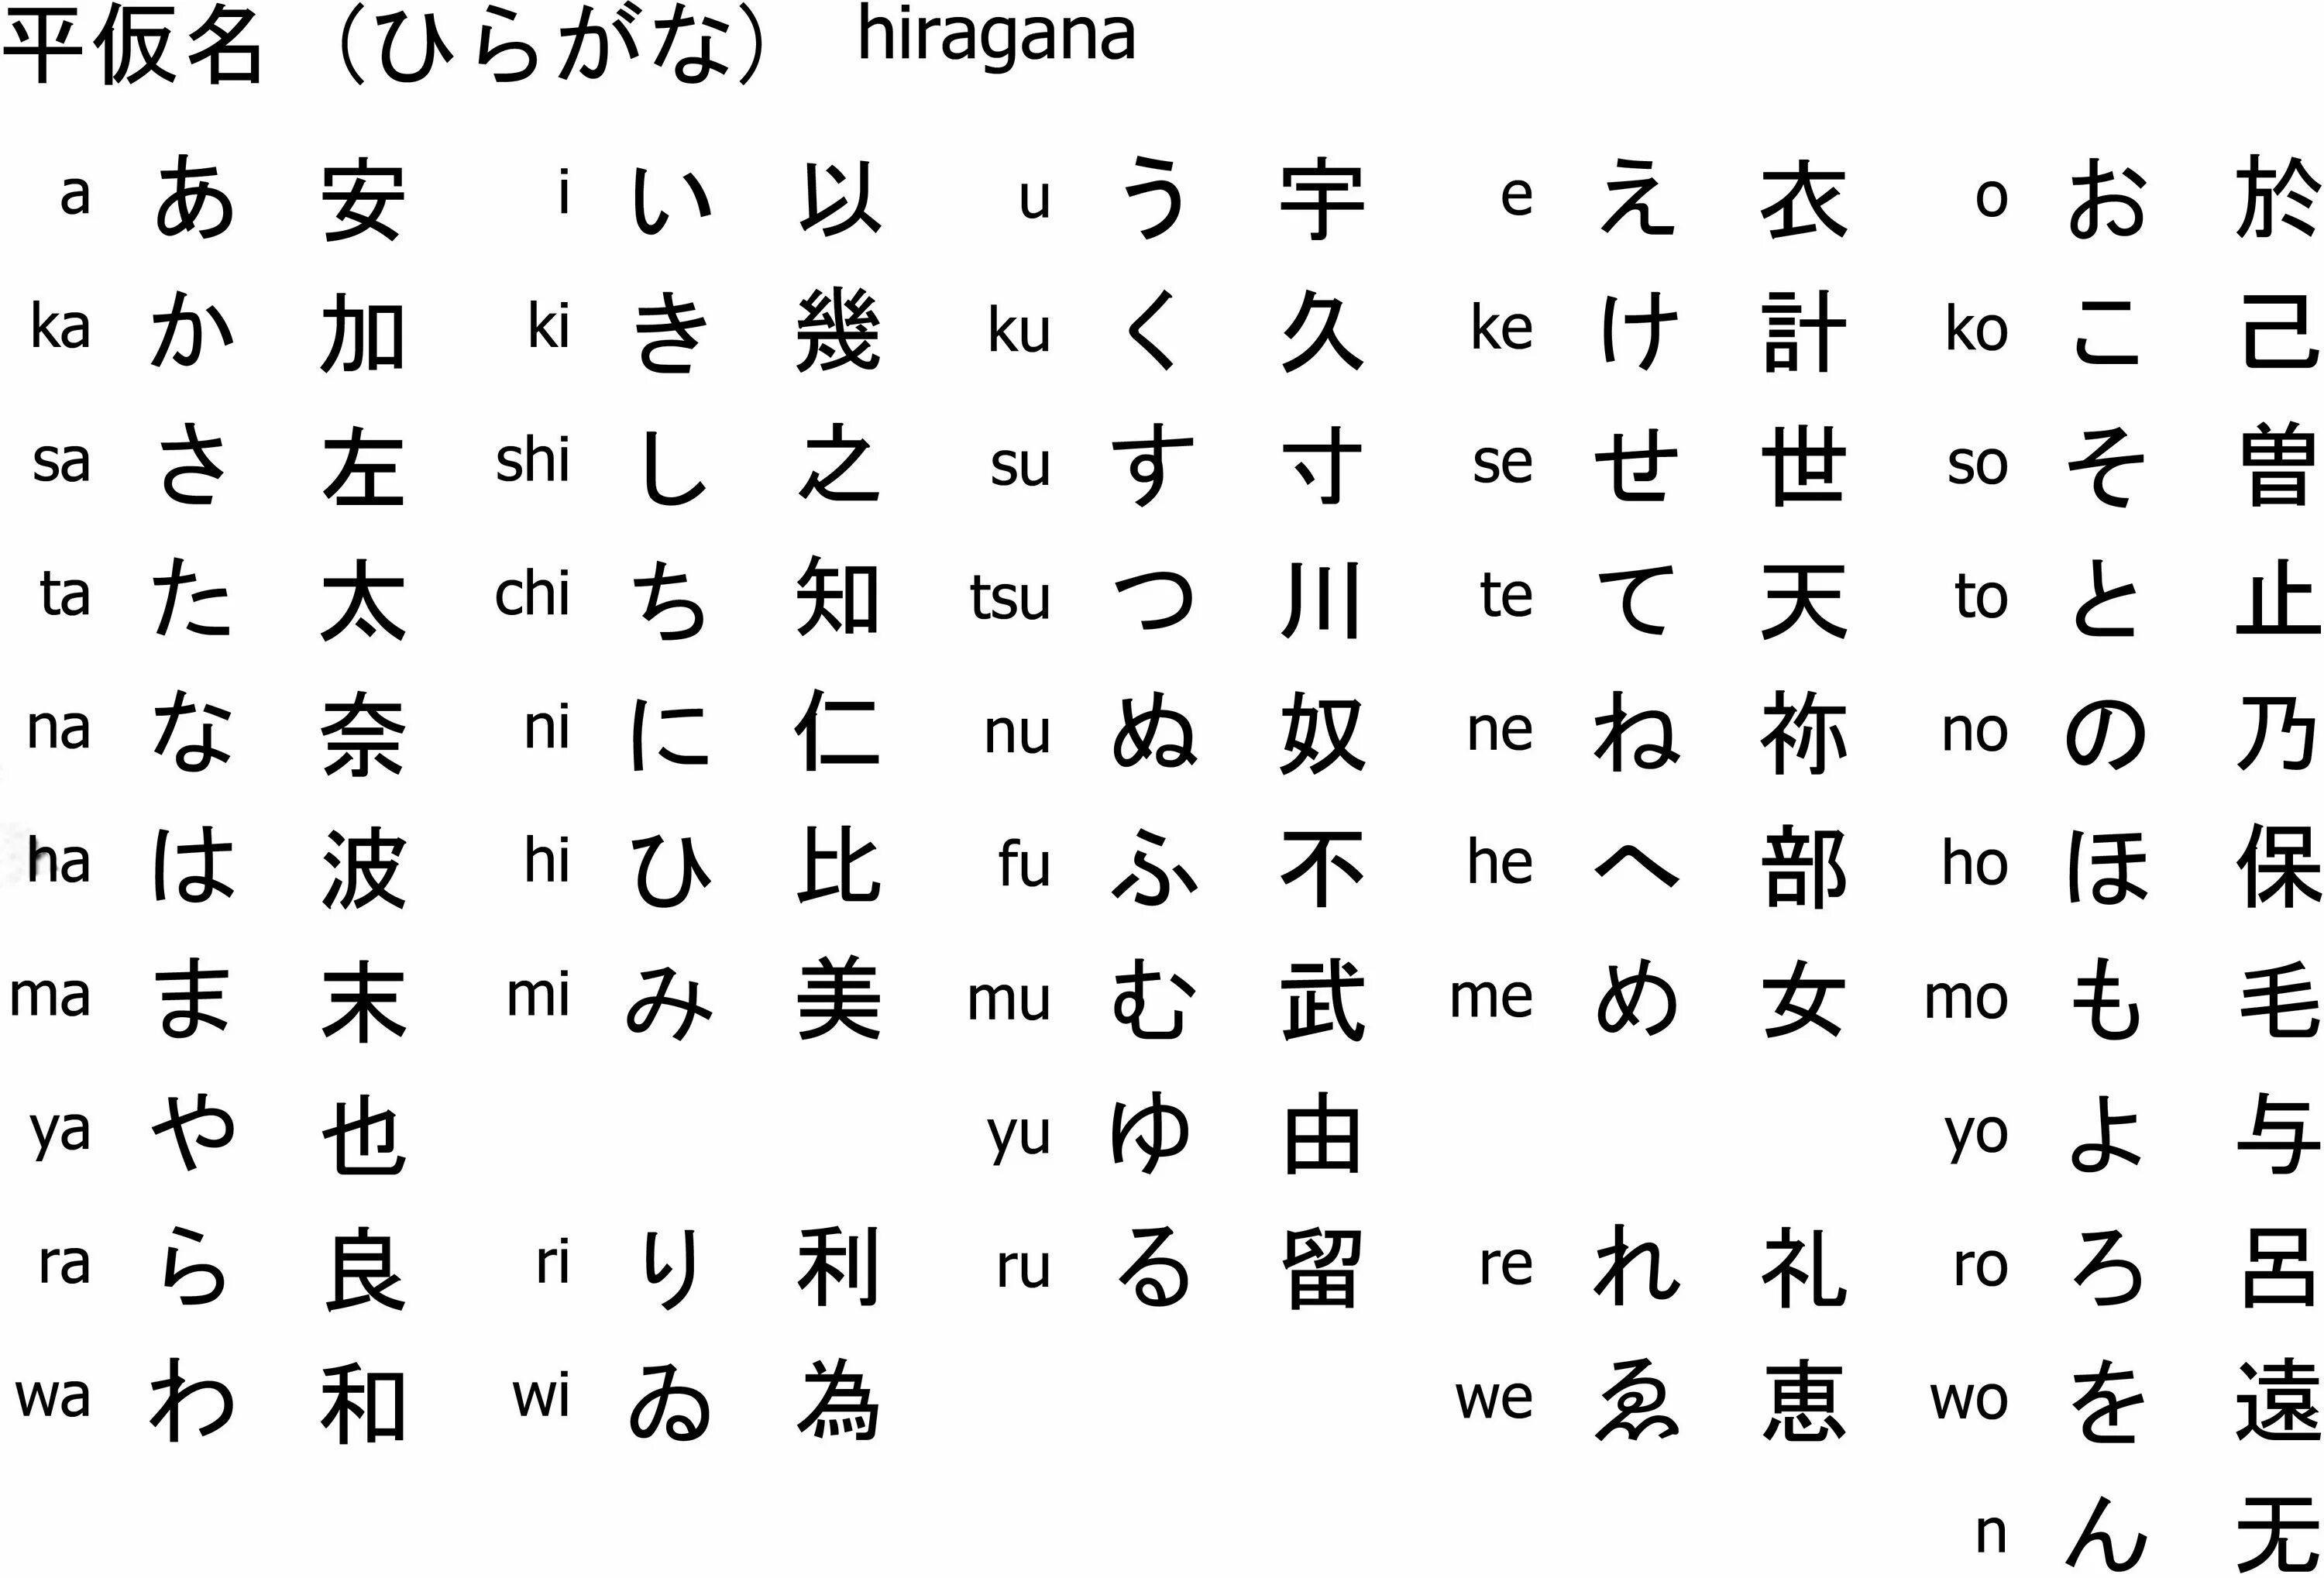 Japanese перевод. Японские иероглифы алфавит. Китайская японская и корейская письменность. Японский язык хирагана и катакана и кандзи. Японская Азбука кандзи.